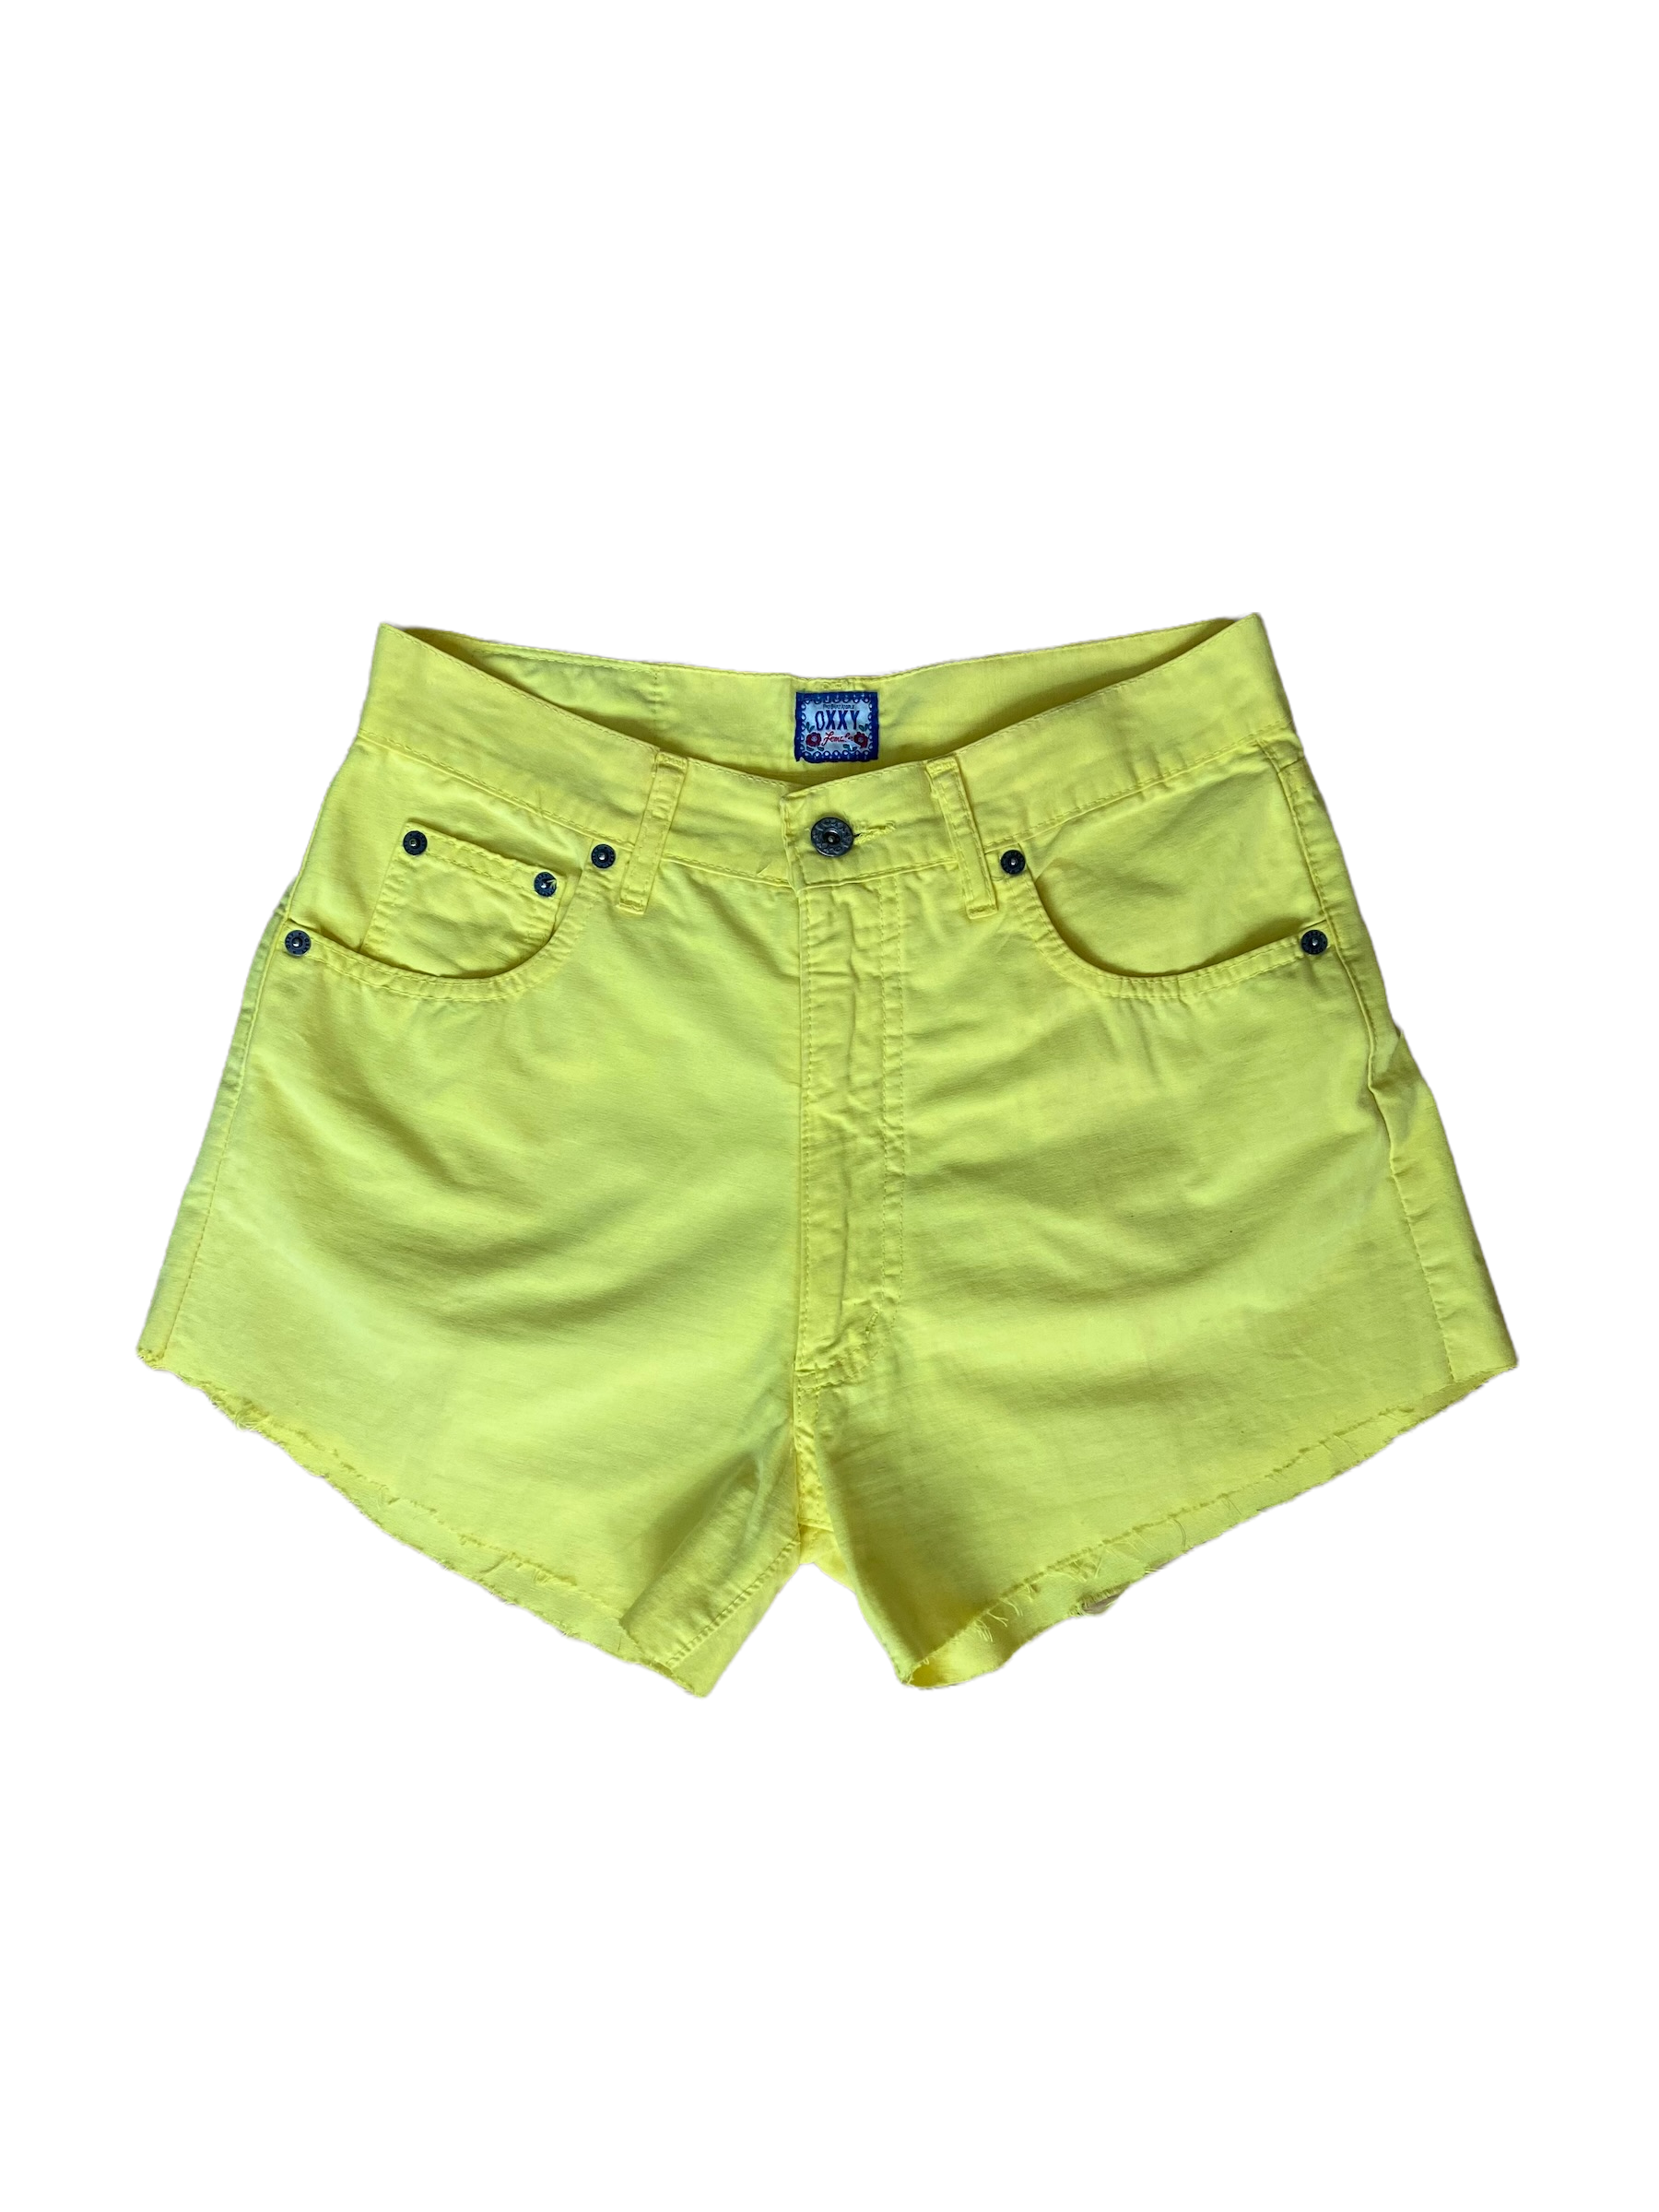 Shorts – Thrifting Still